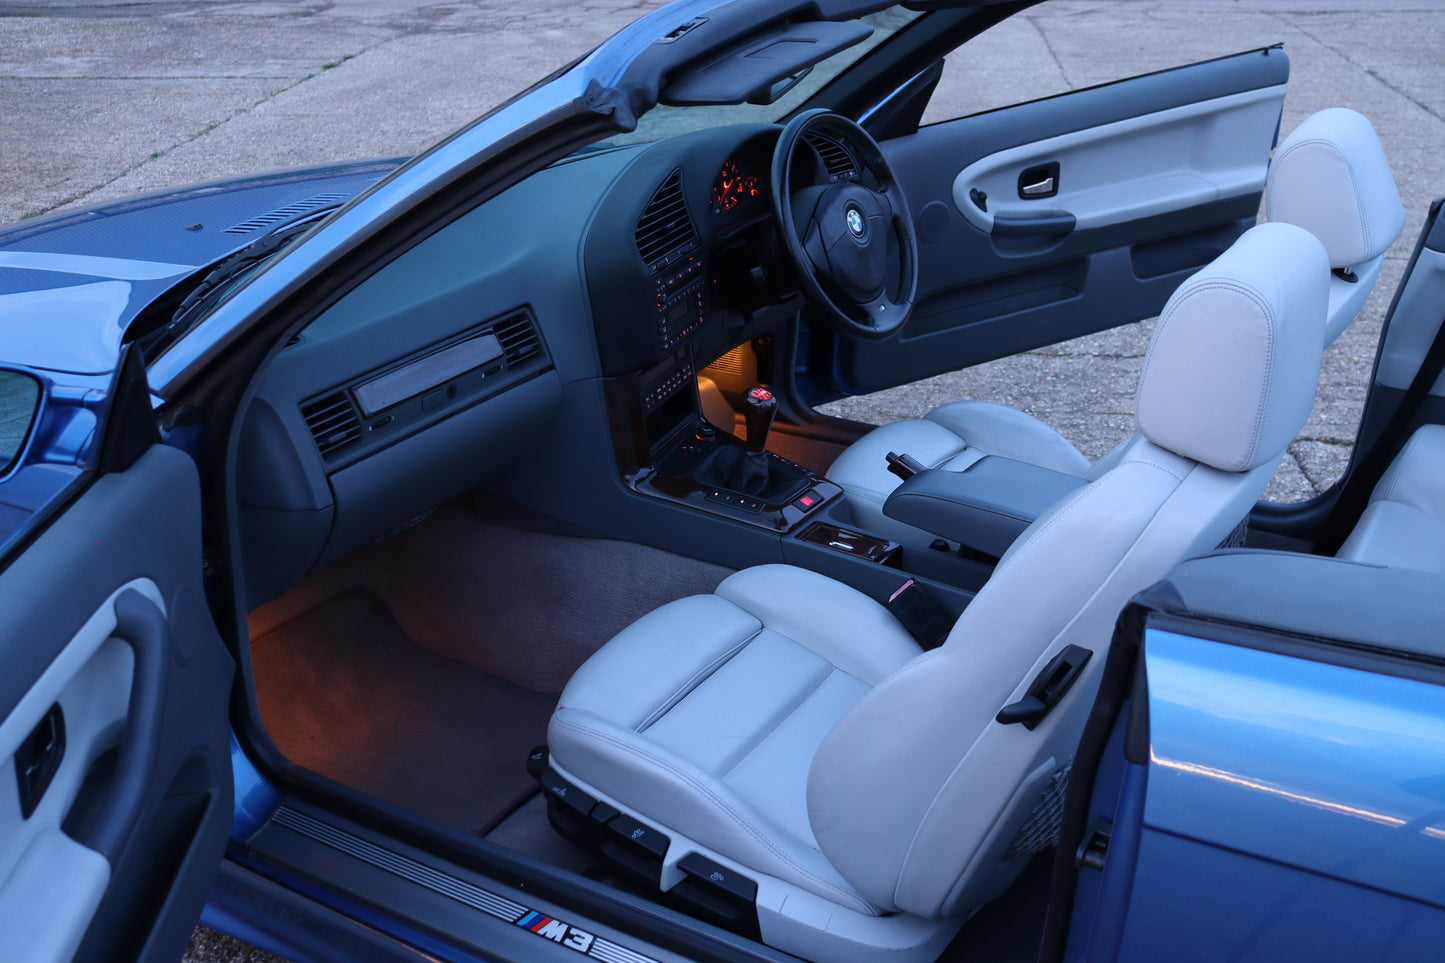 BMW E36 M3 Evo Convertible